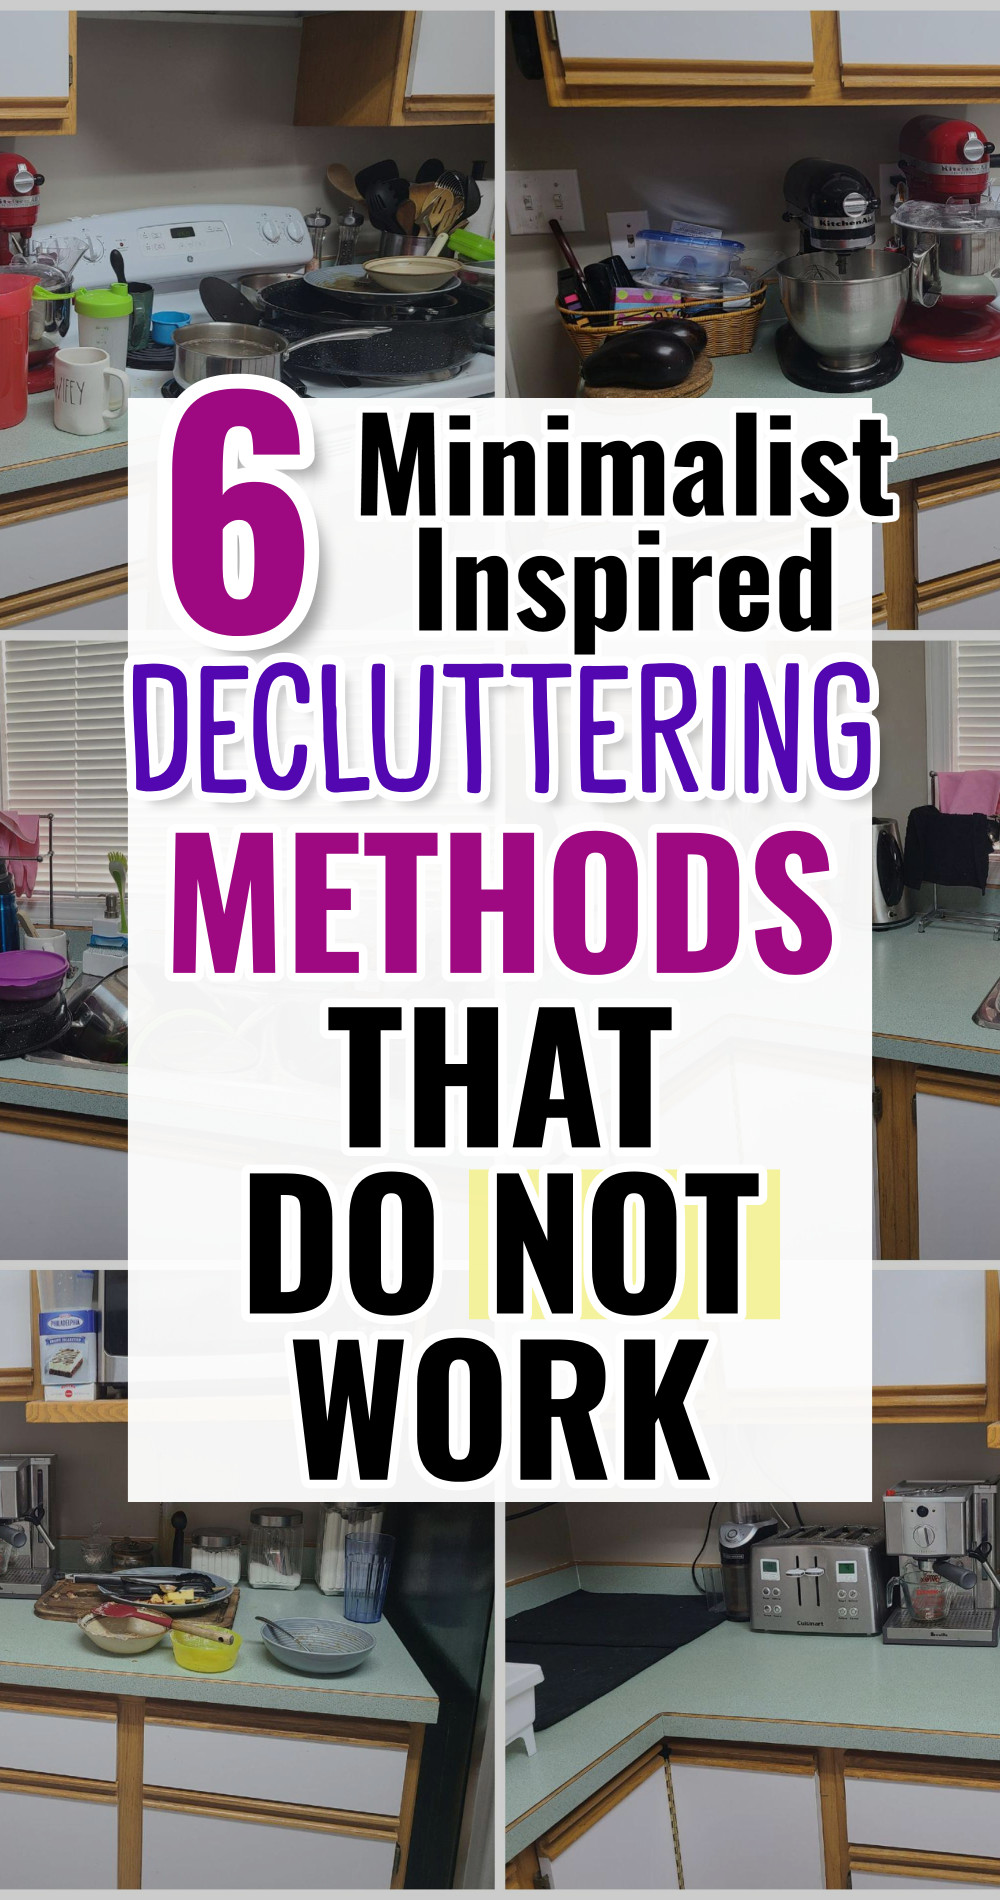 Minimalist Decluttering Methods